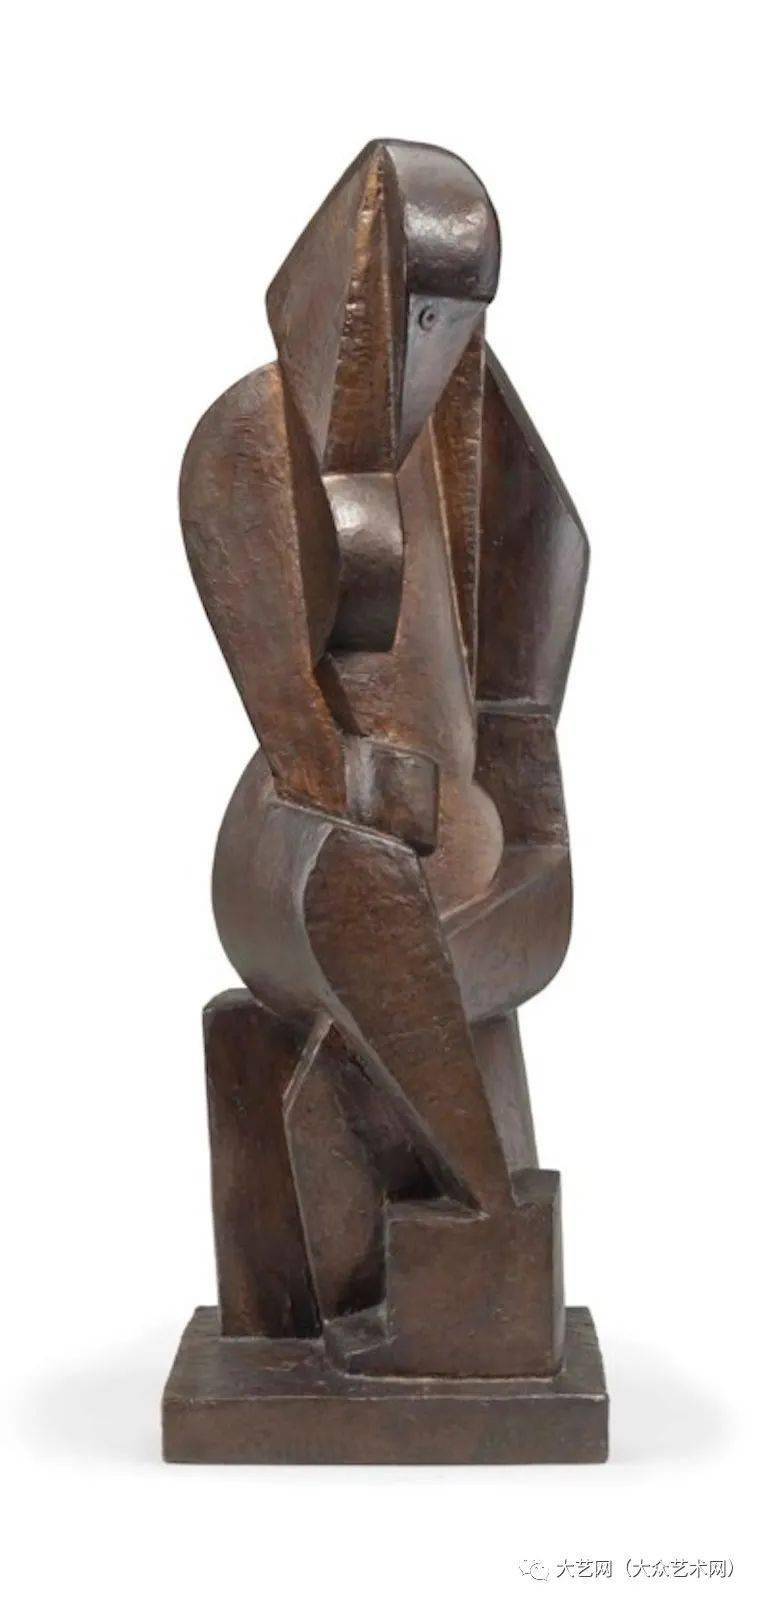 大众艺术网难得一见毕加索名人圈里的立体派雕塑家立陶宛出生法国美国